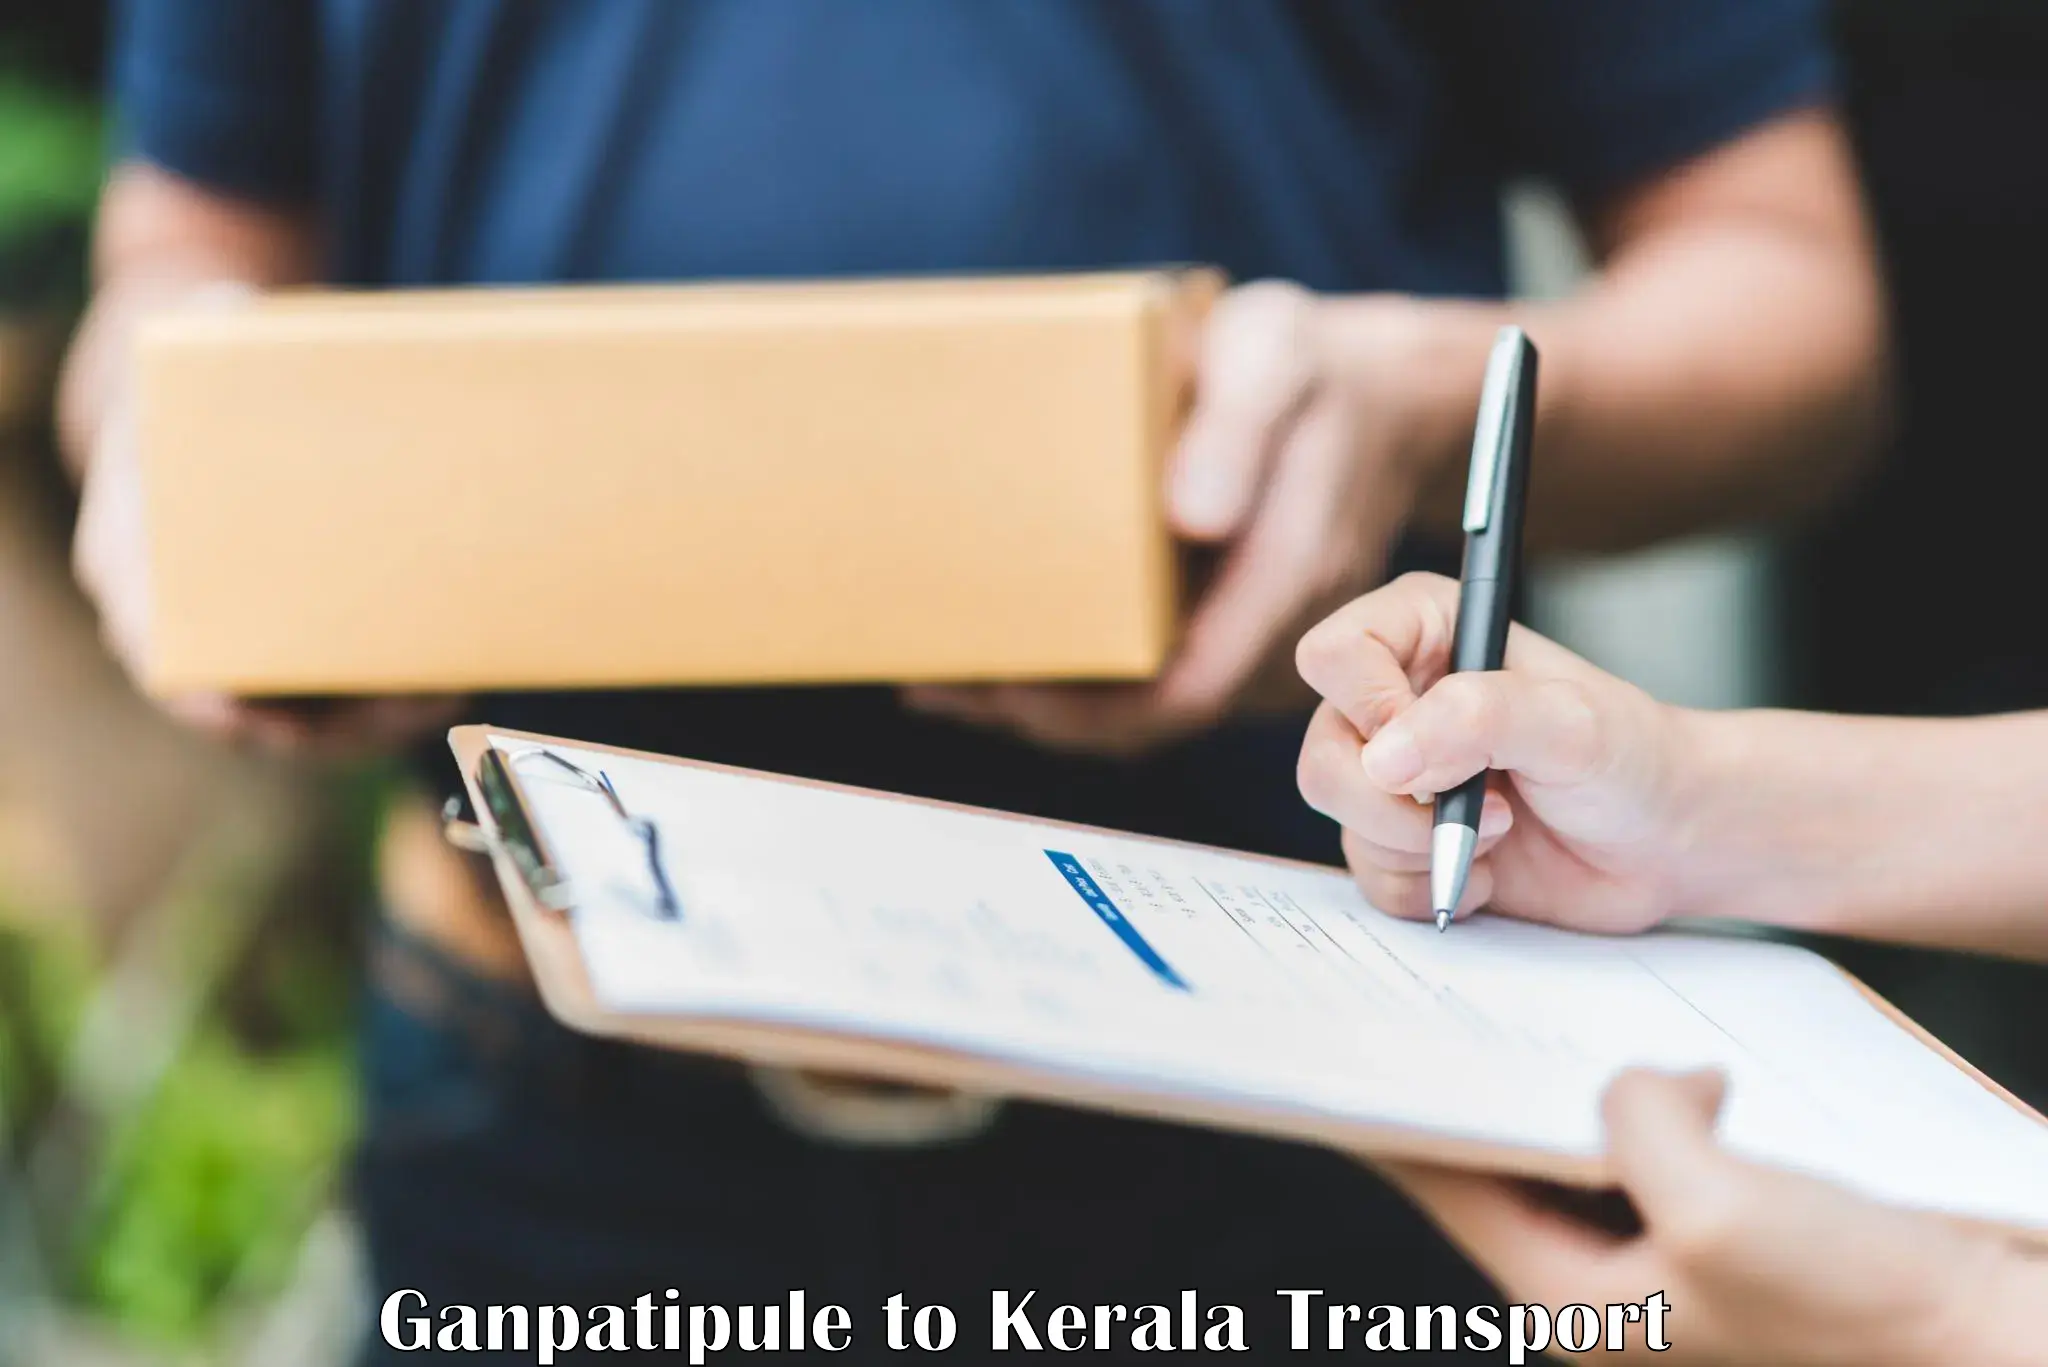 Interstate transport services Ganpatipule to Kozhencherry